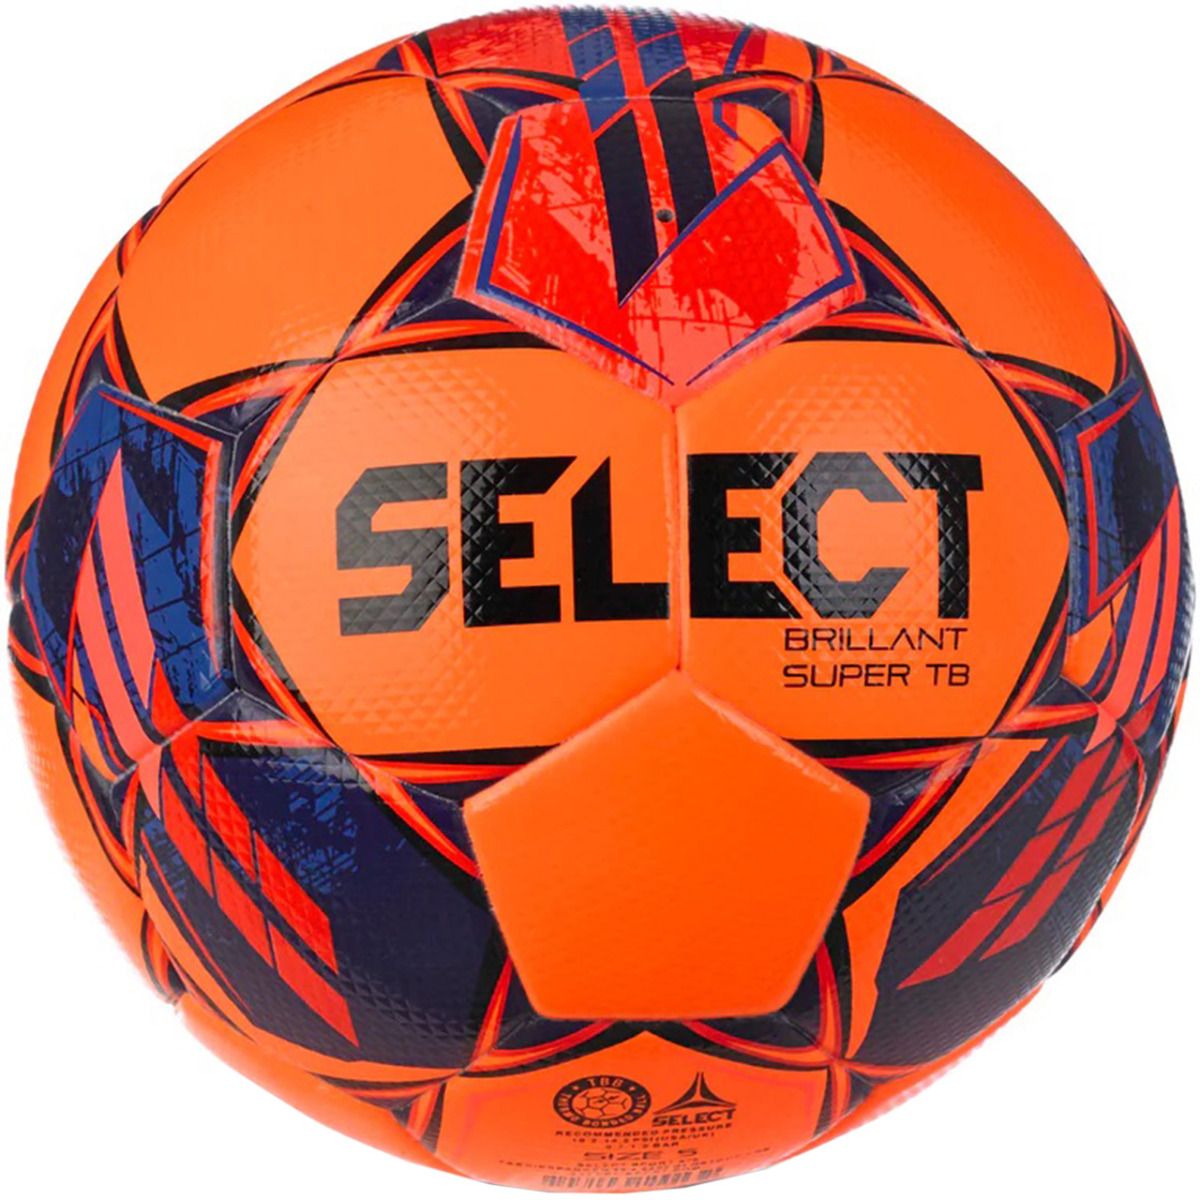 Select Piłka nożna Brillant Super TB 5 FIFA Quality Pro v23 18328